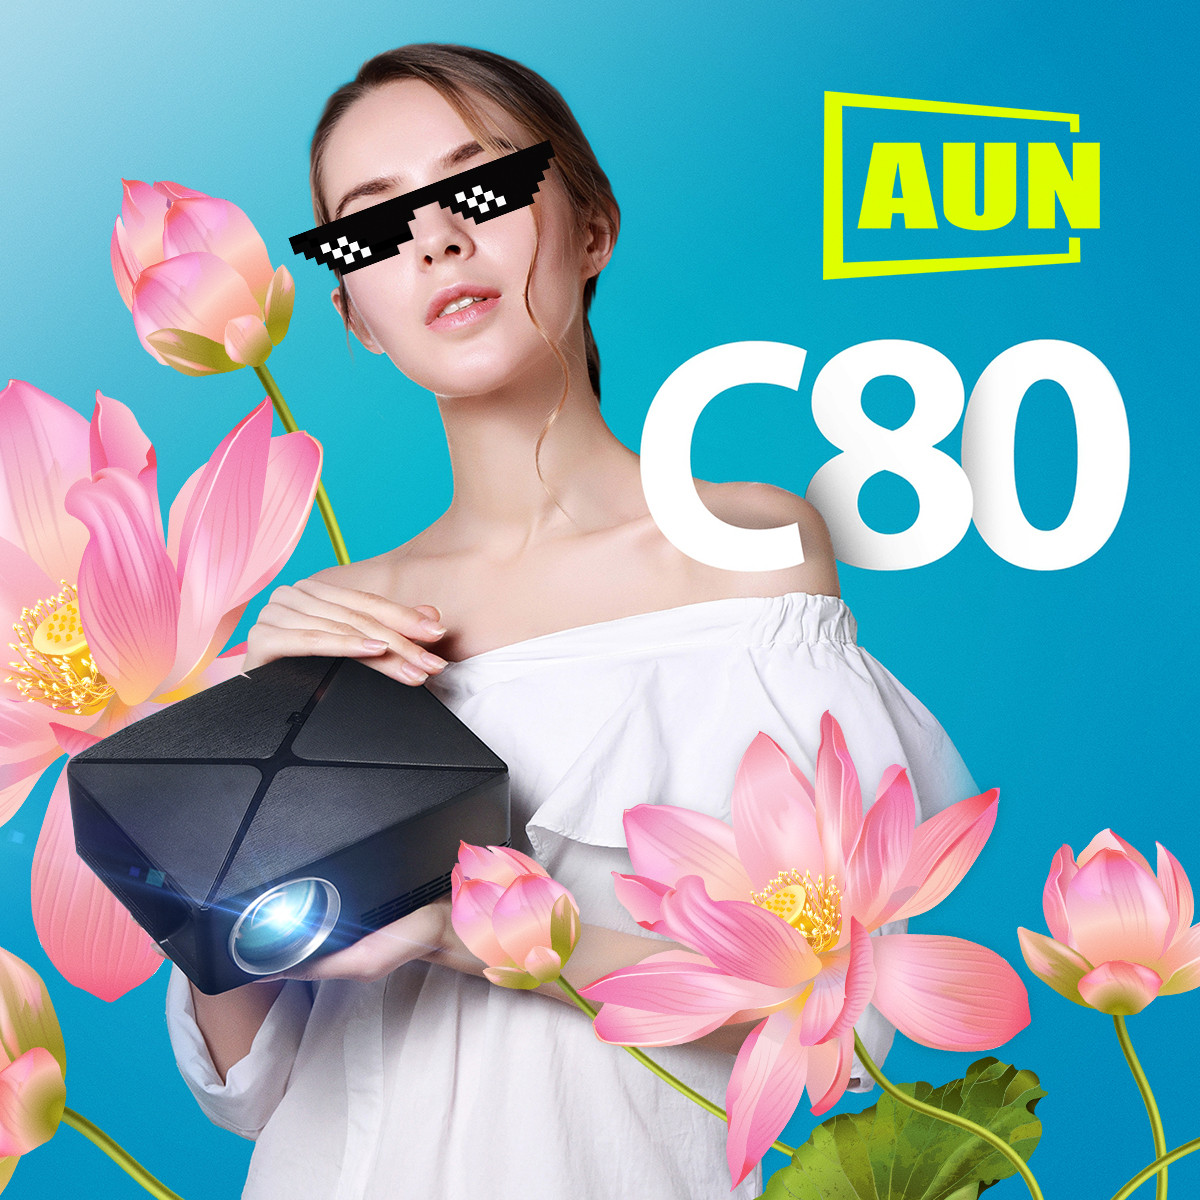 Проектор AUN C80